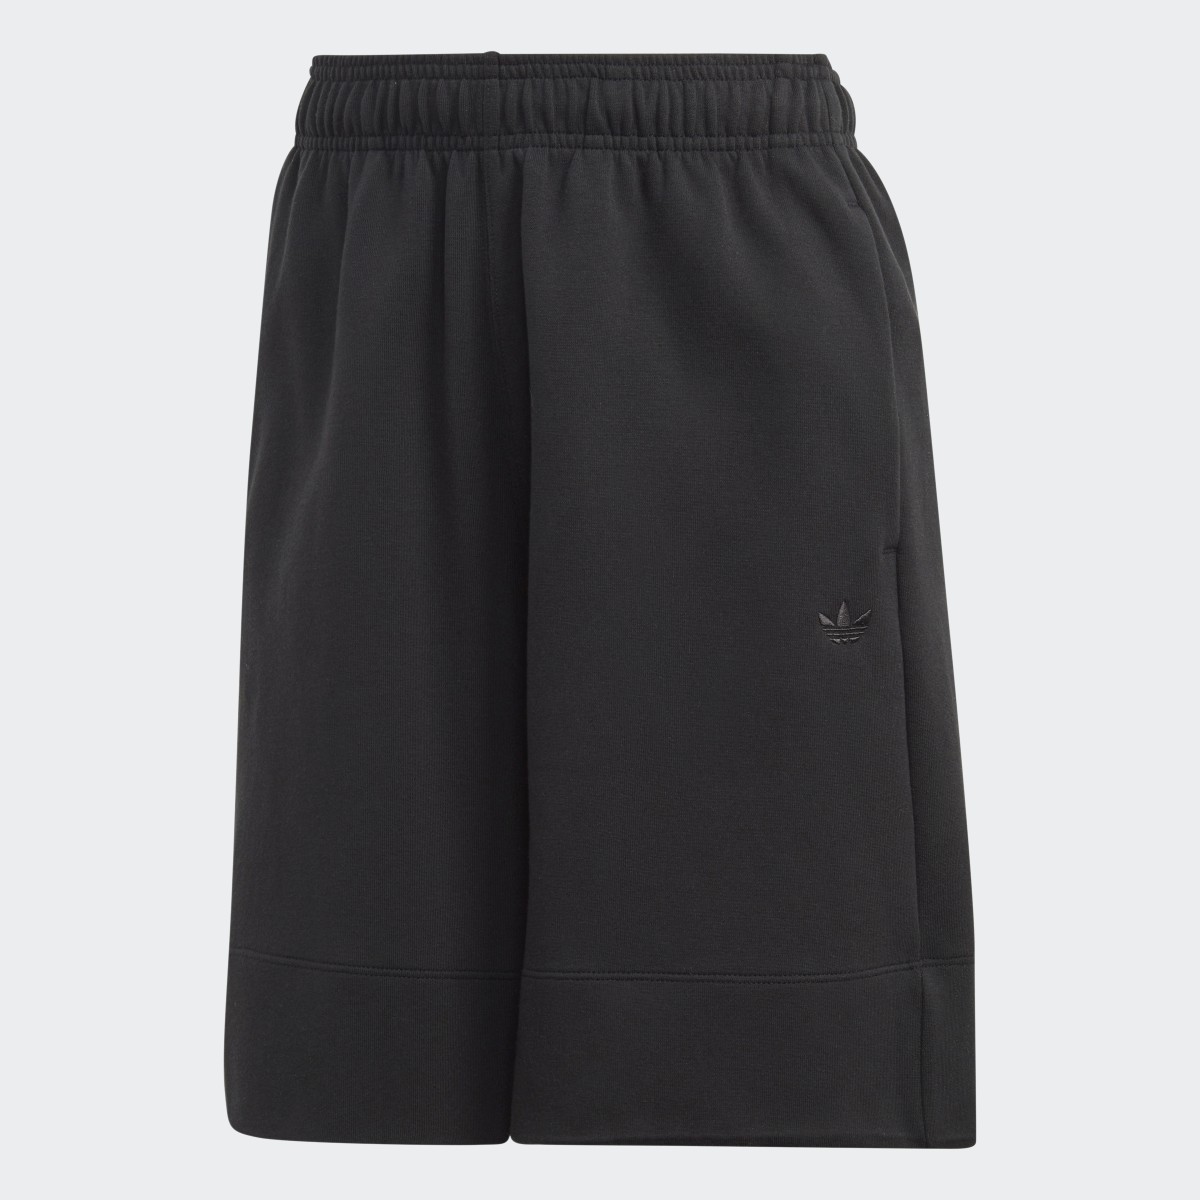 Adidas Premium Essentials Long Shorts. 5